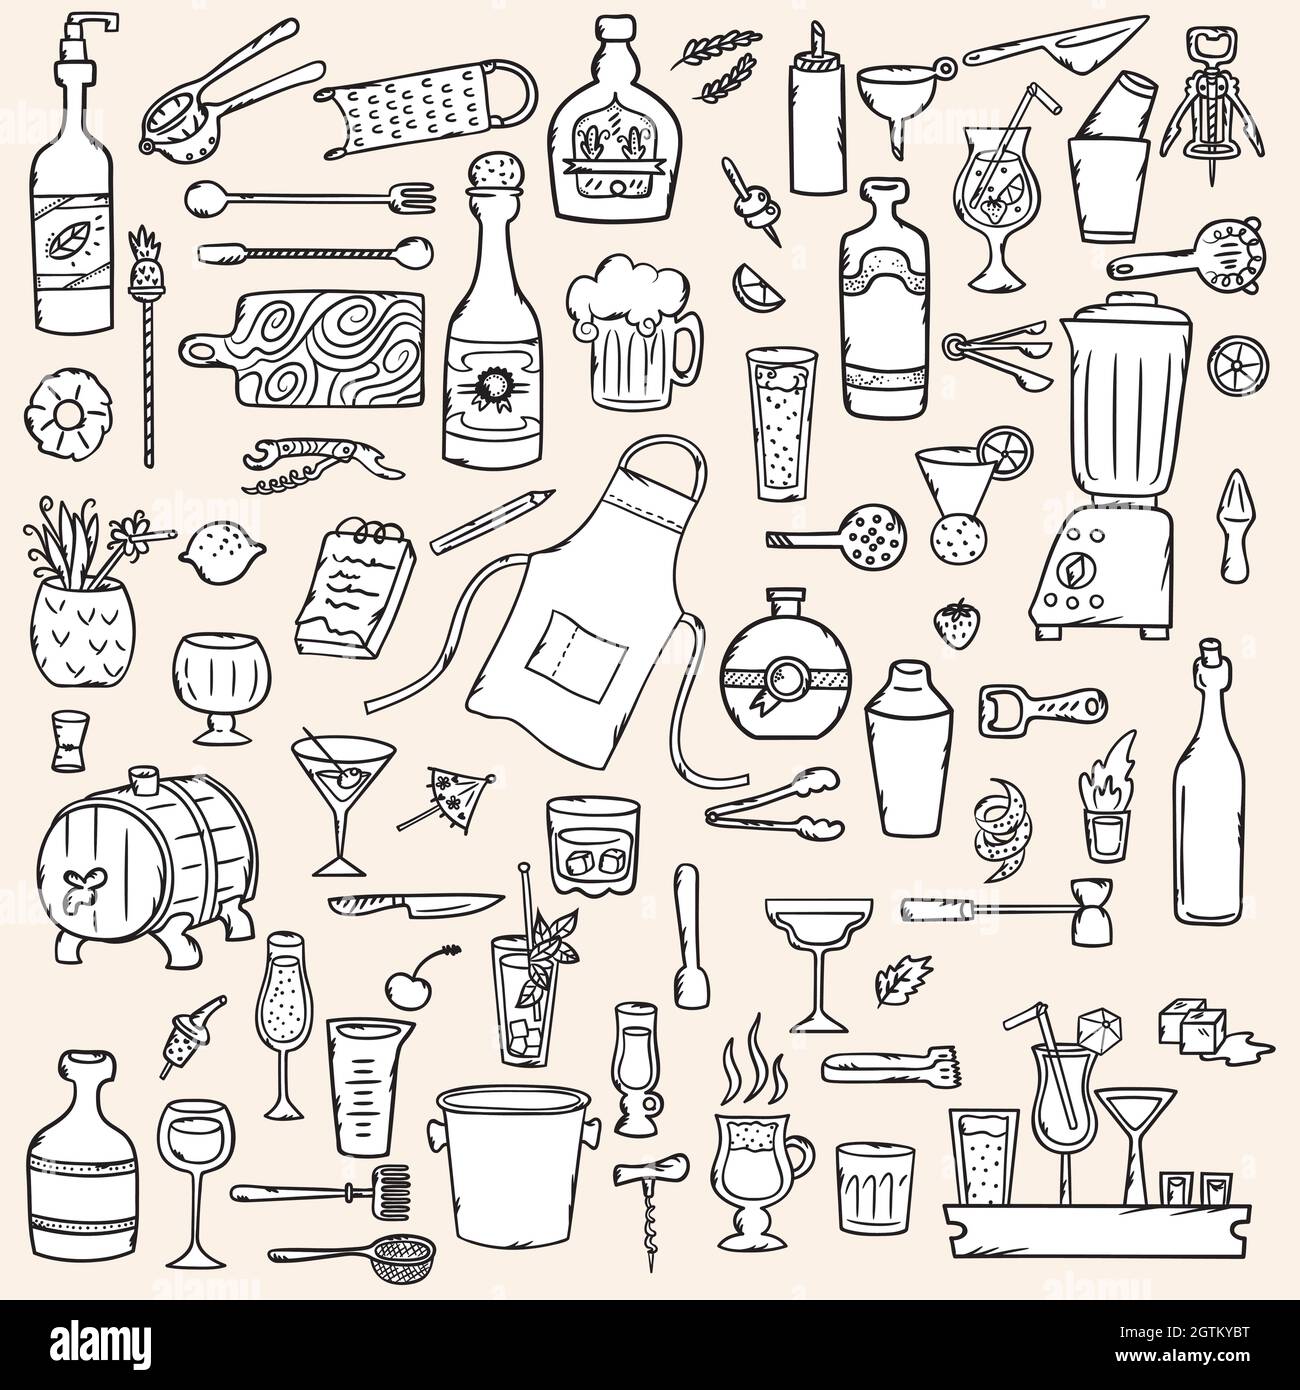 Bartender Doodles. Hand Drawn Bar tending tools. Glasses & Bottles. Black and White. Stock Vector